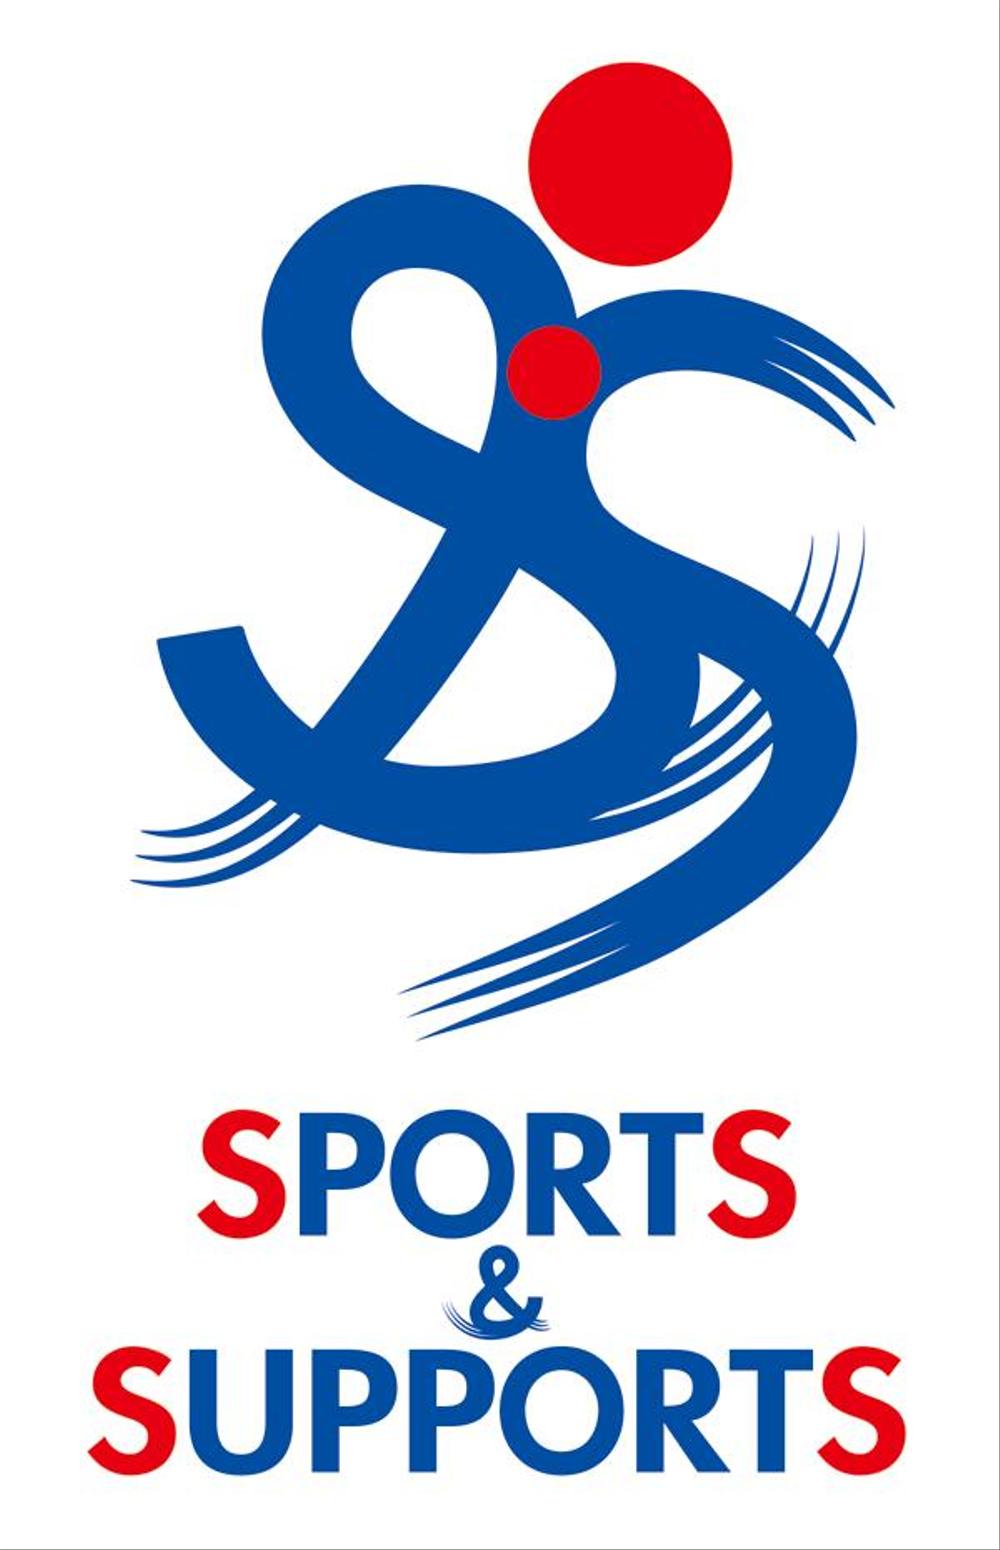 スポーツ振興キャンペーンのロゴマーク制作